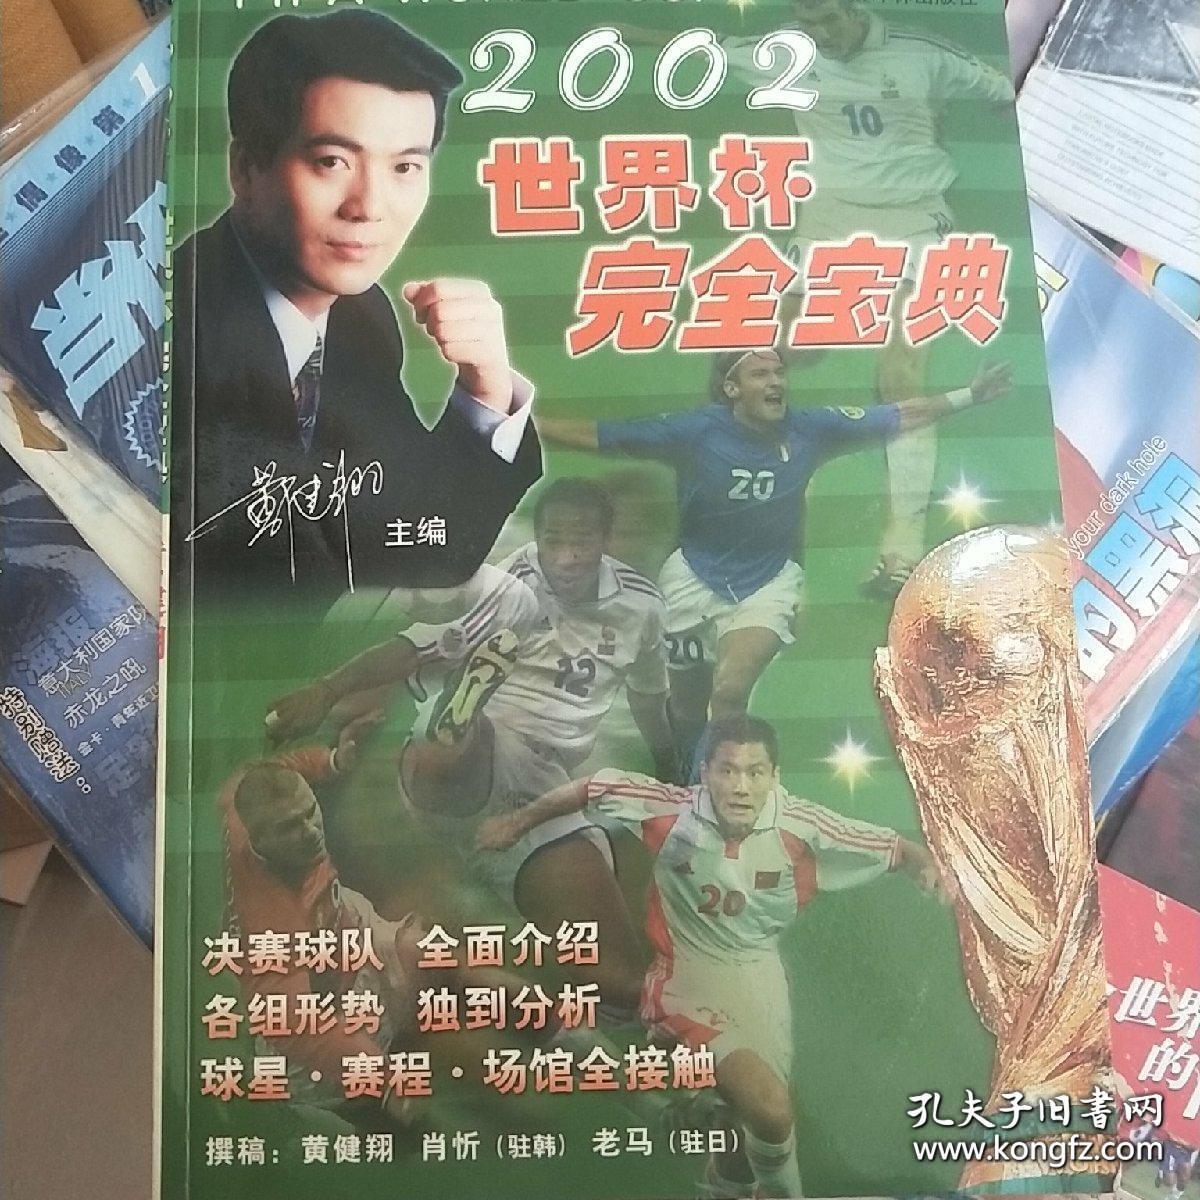 中国足球打进世界杯纪念套书出售：《永恒的瞬间--2002世界杯》《2002世界杯完全宝典》。附赠国足进入世界杯期刊1种（足球之夜）